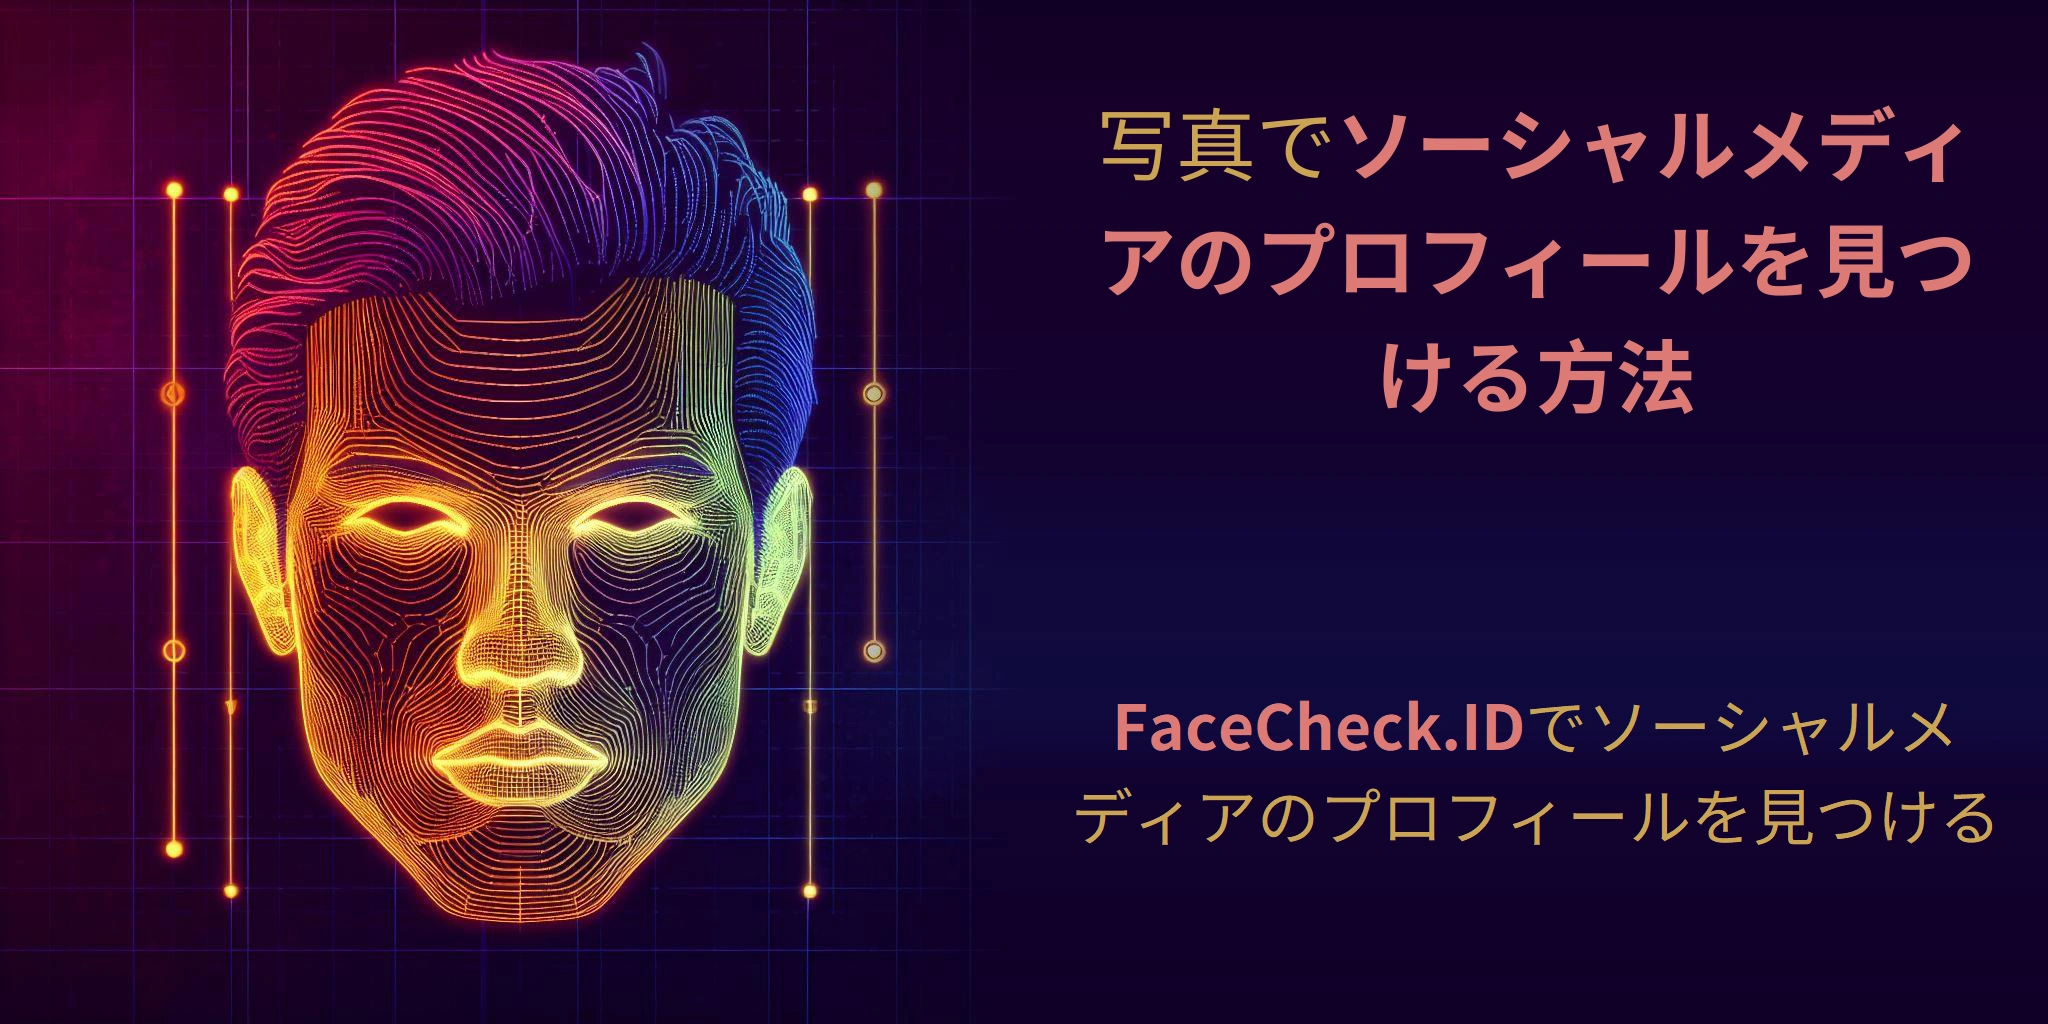 写真でソーシャルメディアのプロフィールを見つける方法 FaceCheck.IDでソーシャルメディアのプロフィールを見つける